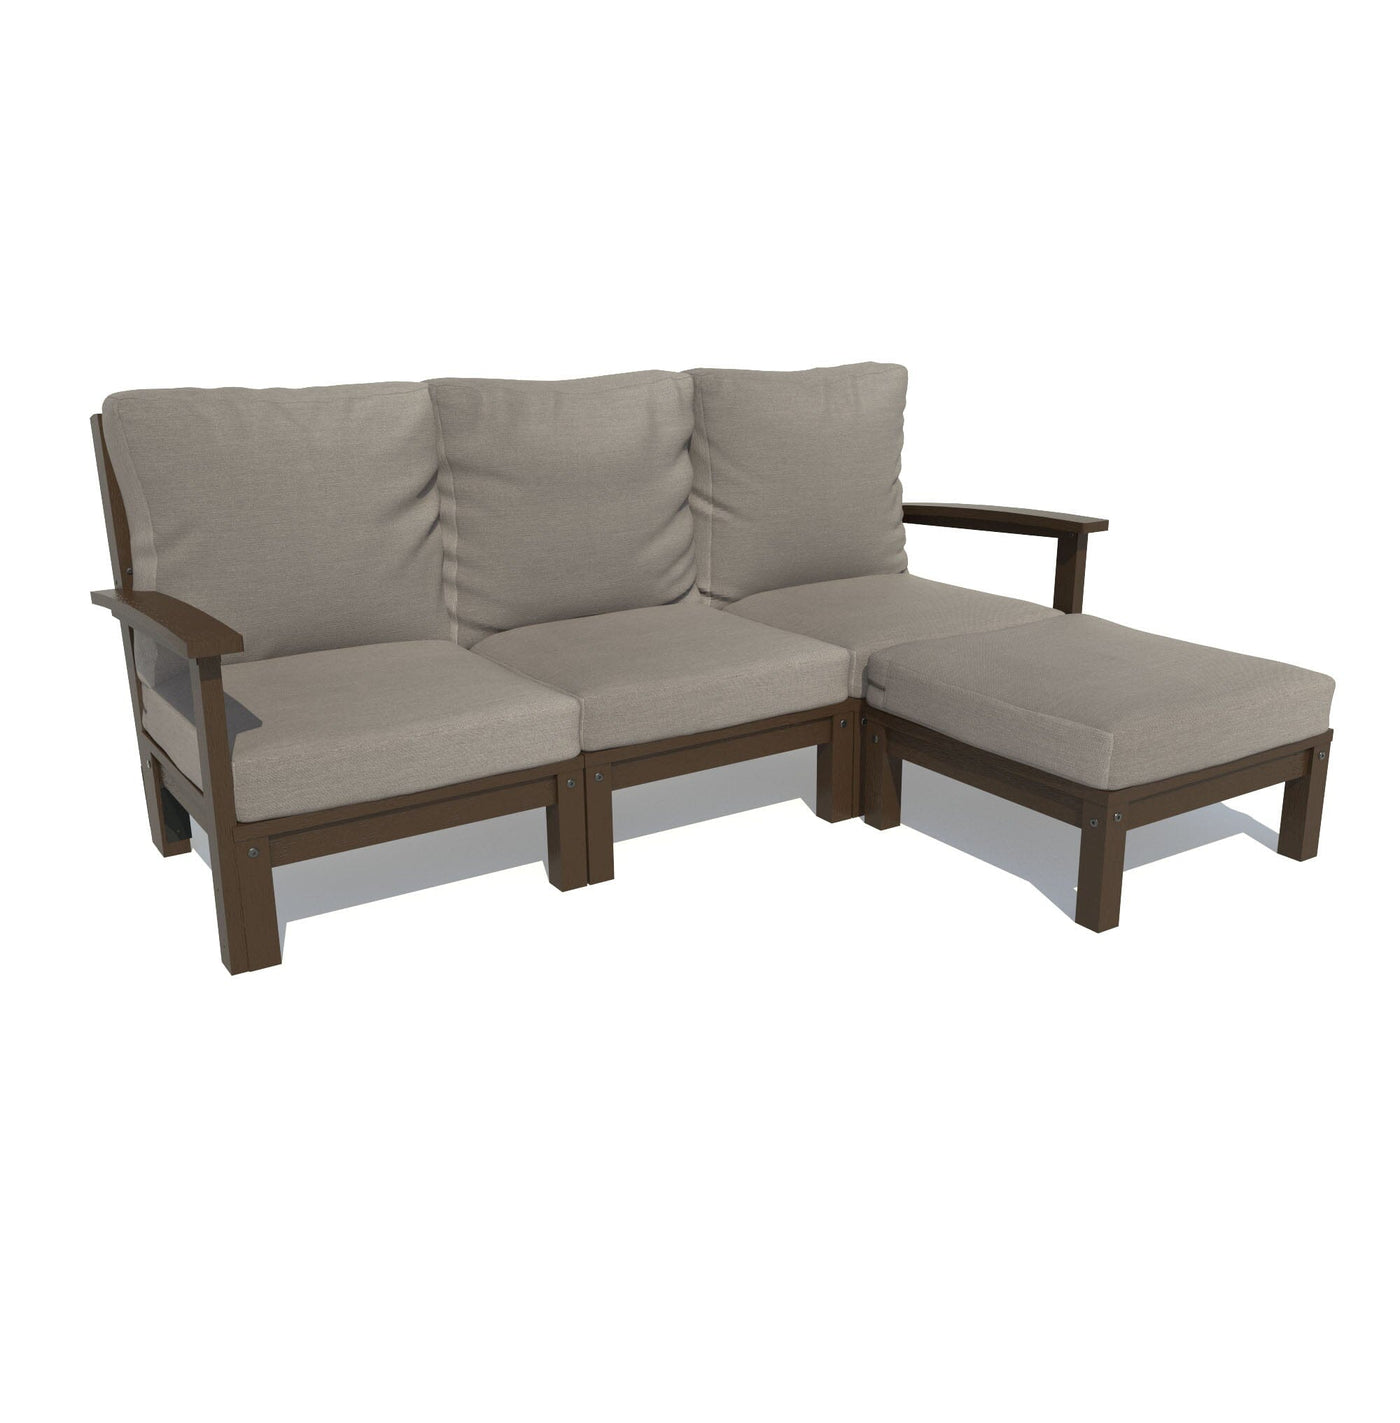 Bespoke Deep Seating: Sofa and Ottoman Deep Seating Highwood USA Stone Gray Weathered Acorn 